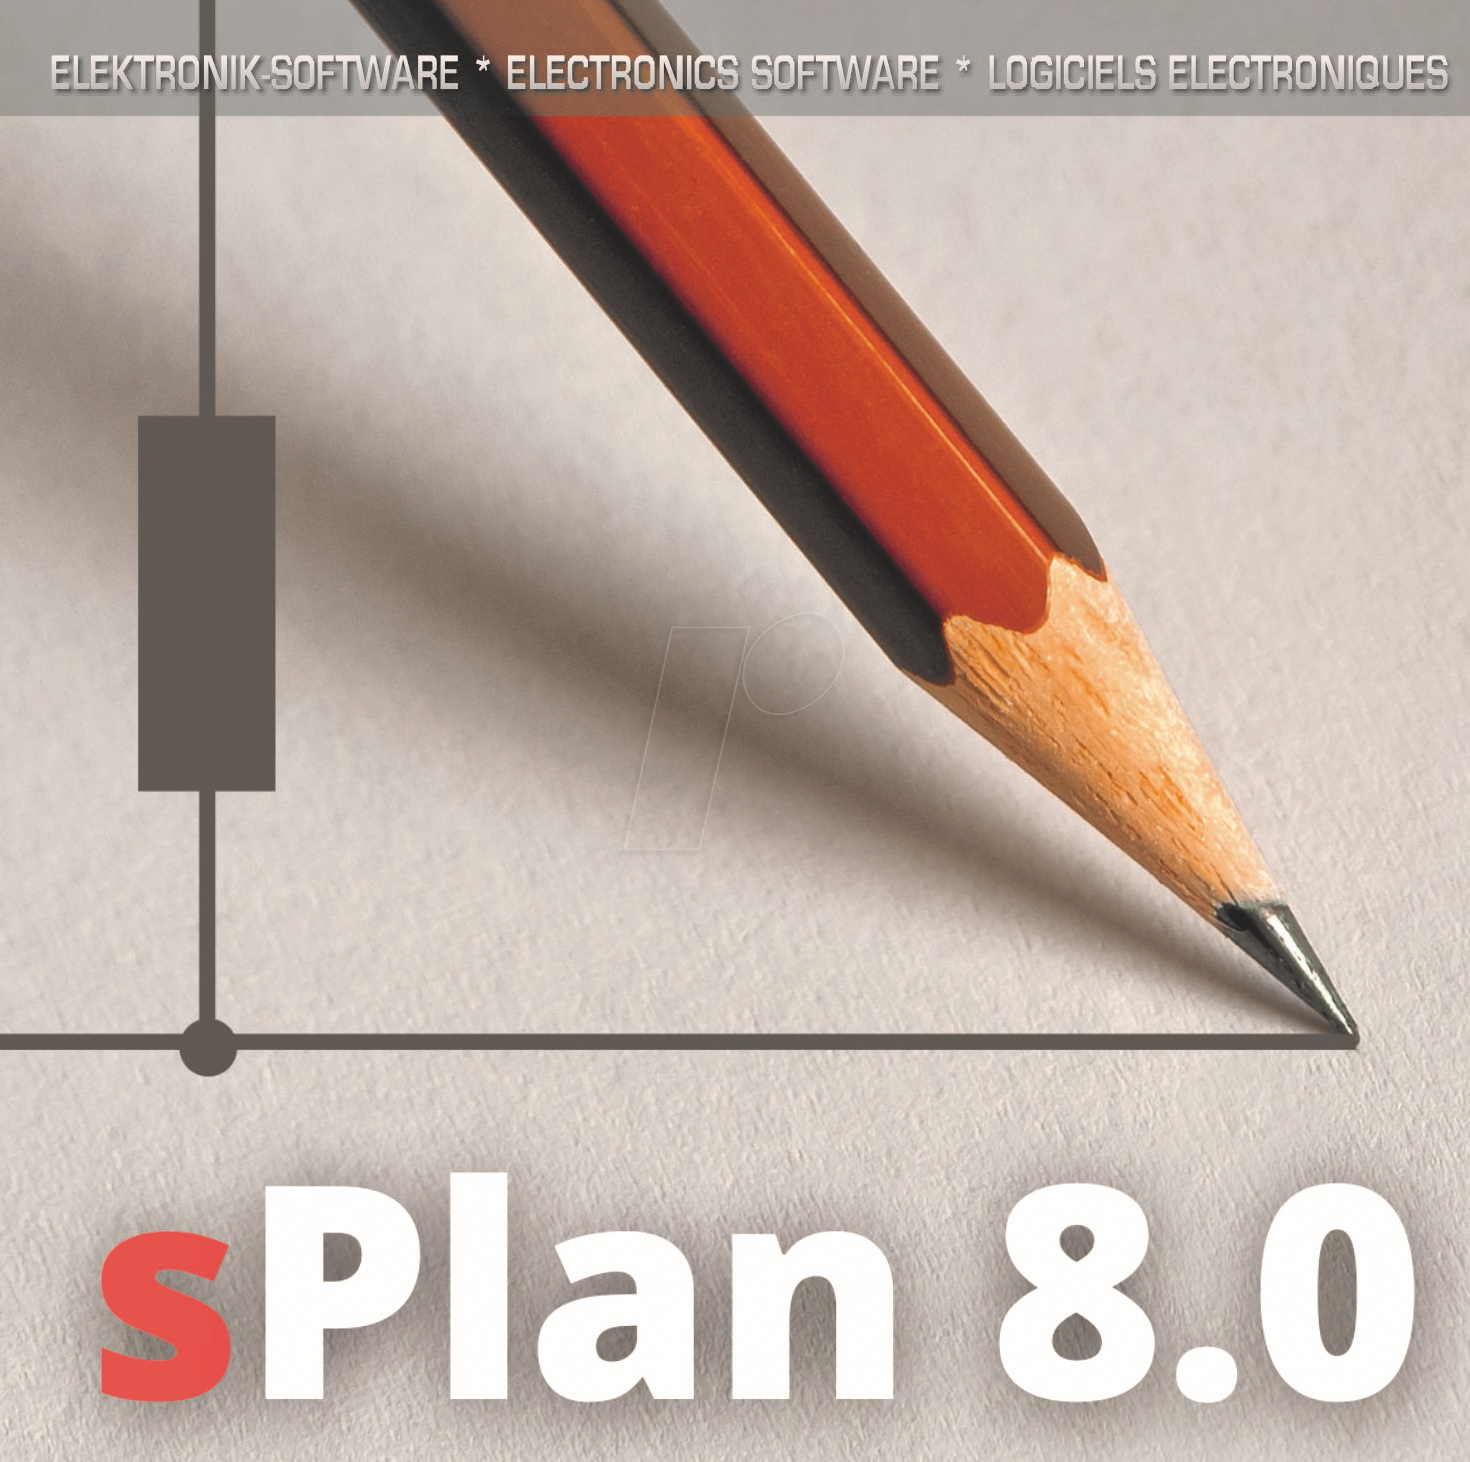 SPLAN - Elektronik Software, sPlan 8.0, Schaltungseditor